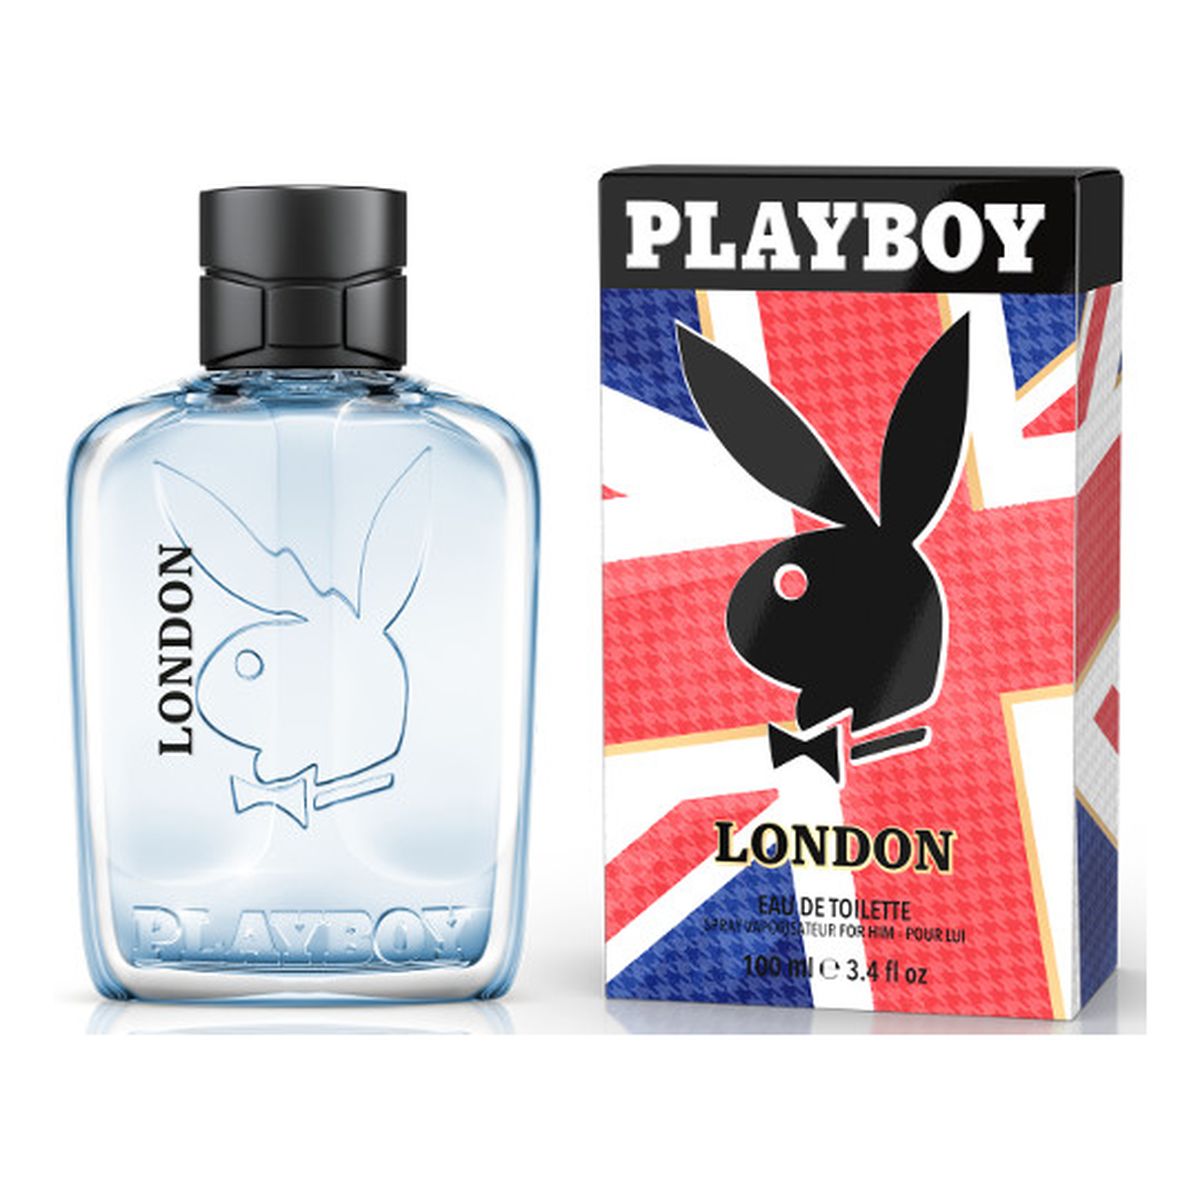 Playboy London Woda toaletowa spray 100ml